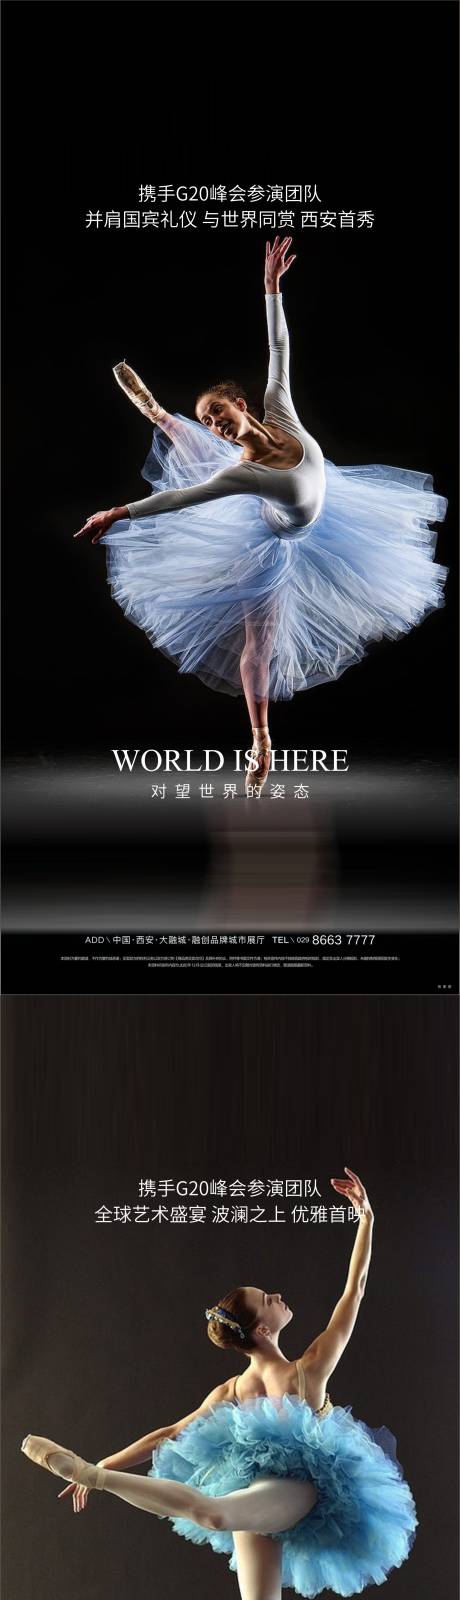 芭蕾舞系列海报